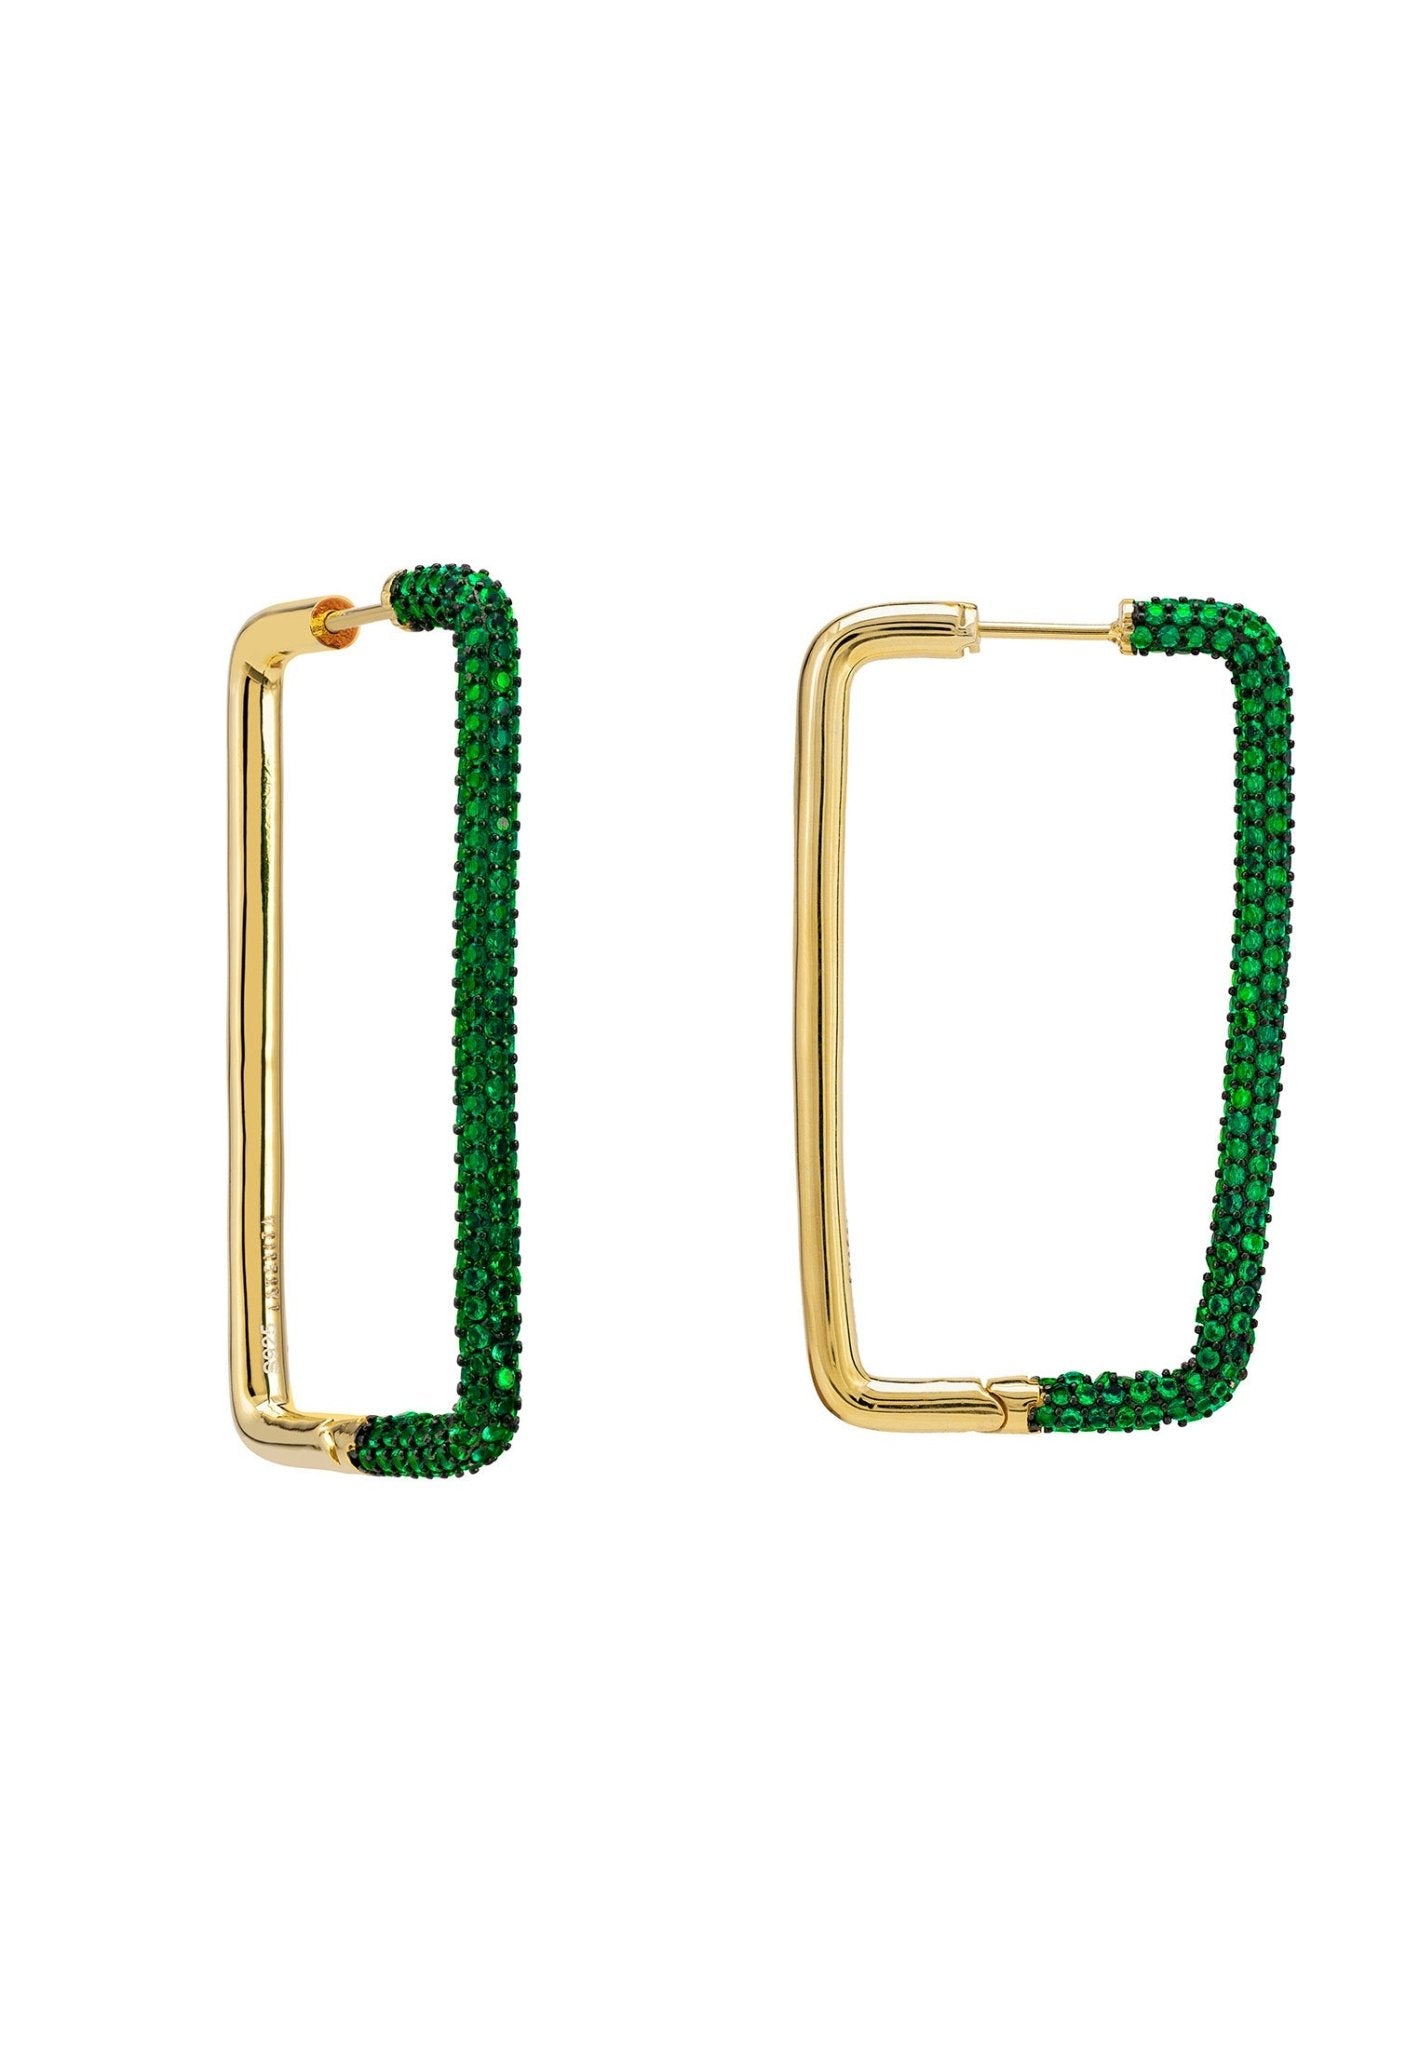 Large Link Hoop Earrings Gold Emerald Green Cz - LATELITA Earrings